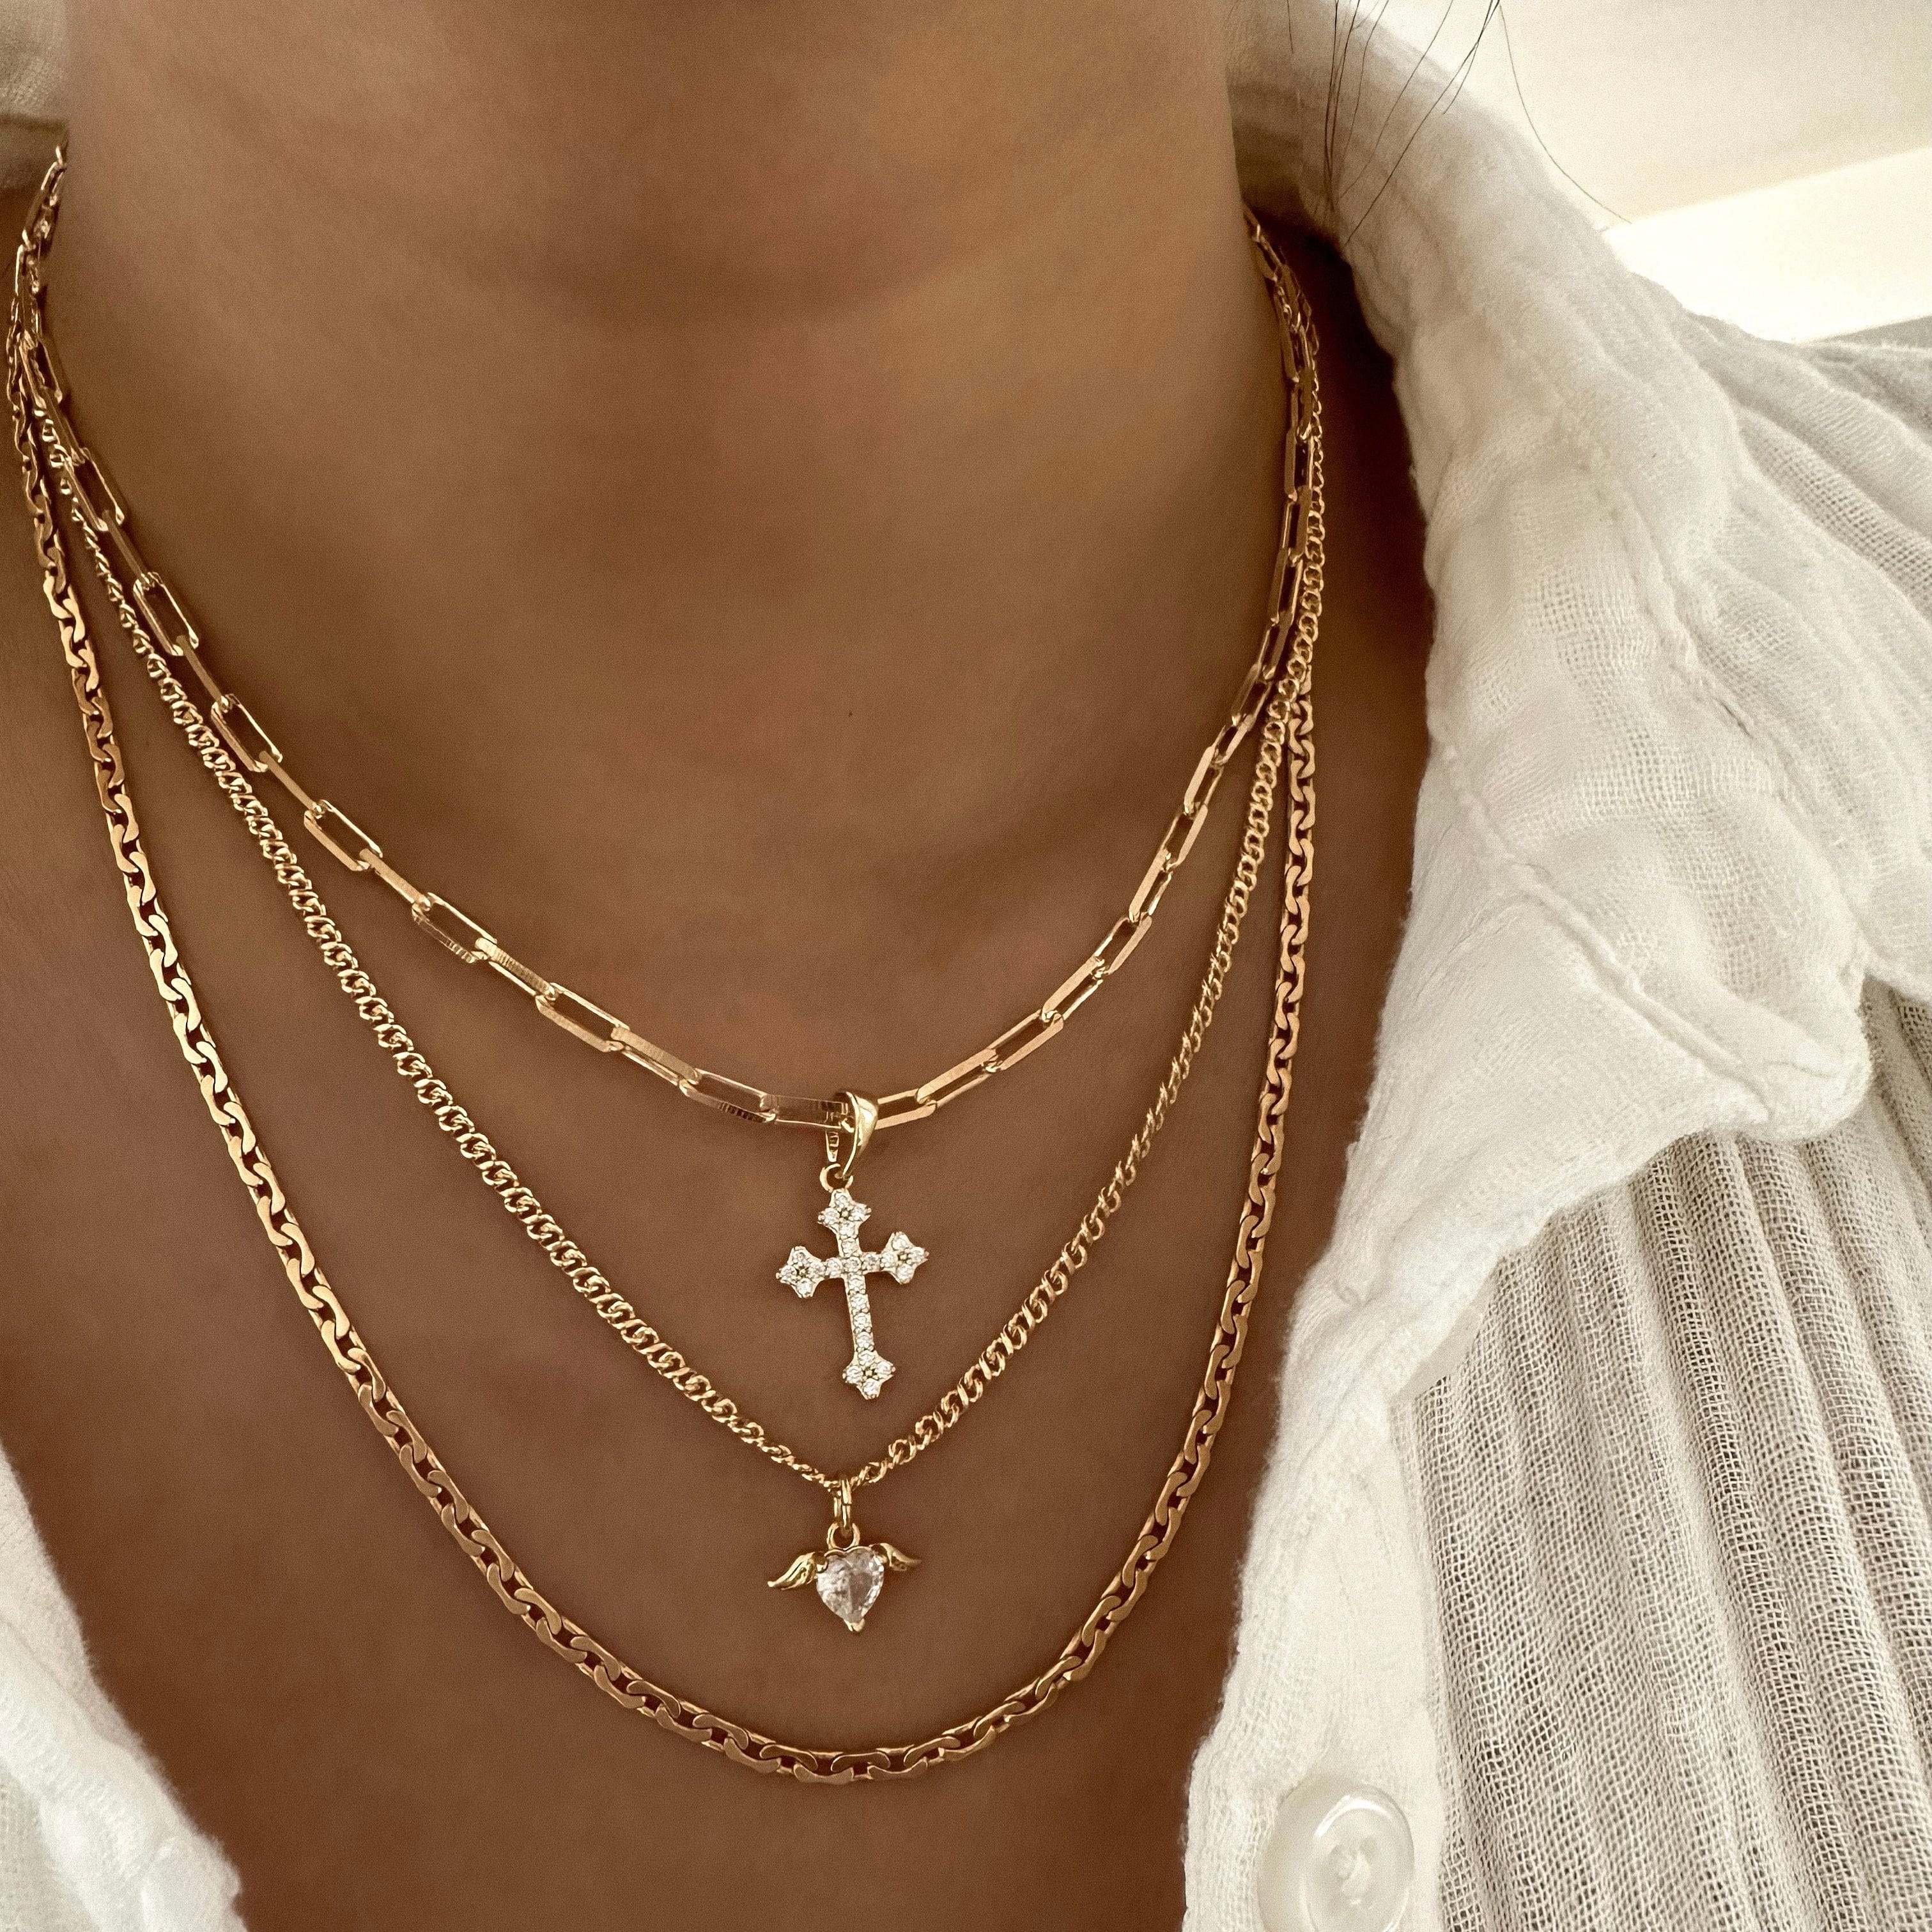 LE sensor necklace Zayla Chain Necklace